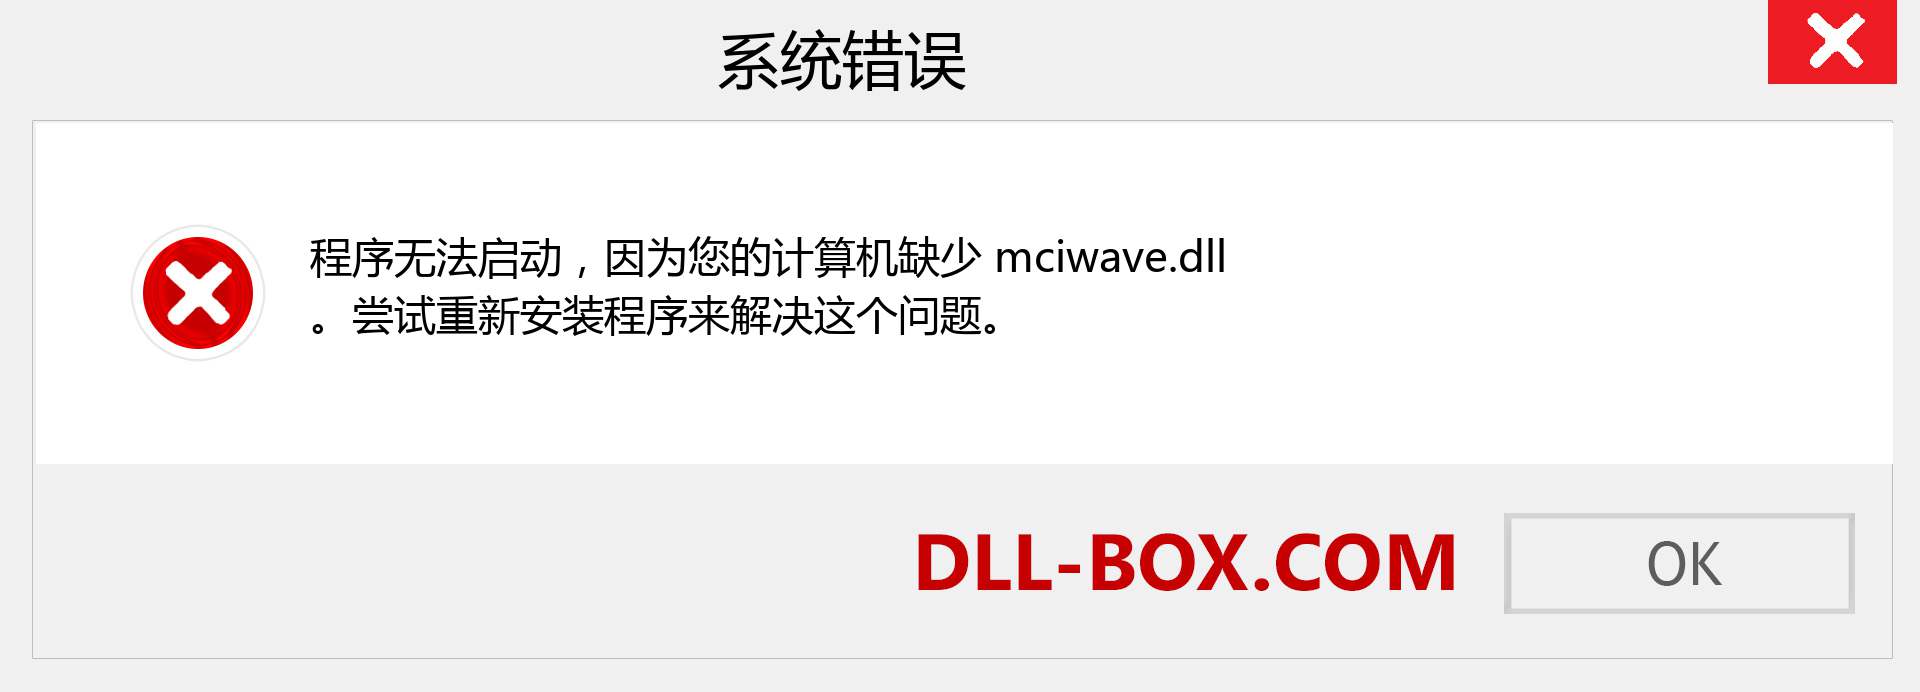 mciwave.dll 文件丢失？。 适用于 Windows 7、8、10 的下载 - 修复 Windows、照片、图像上的 mciwave dll 丢失错误